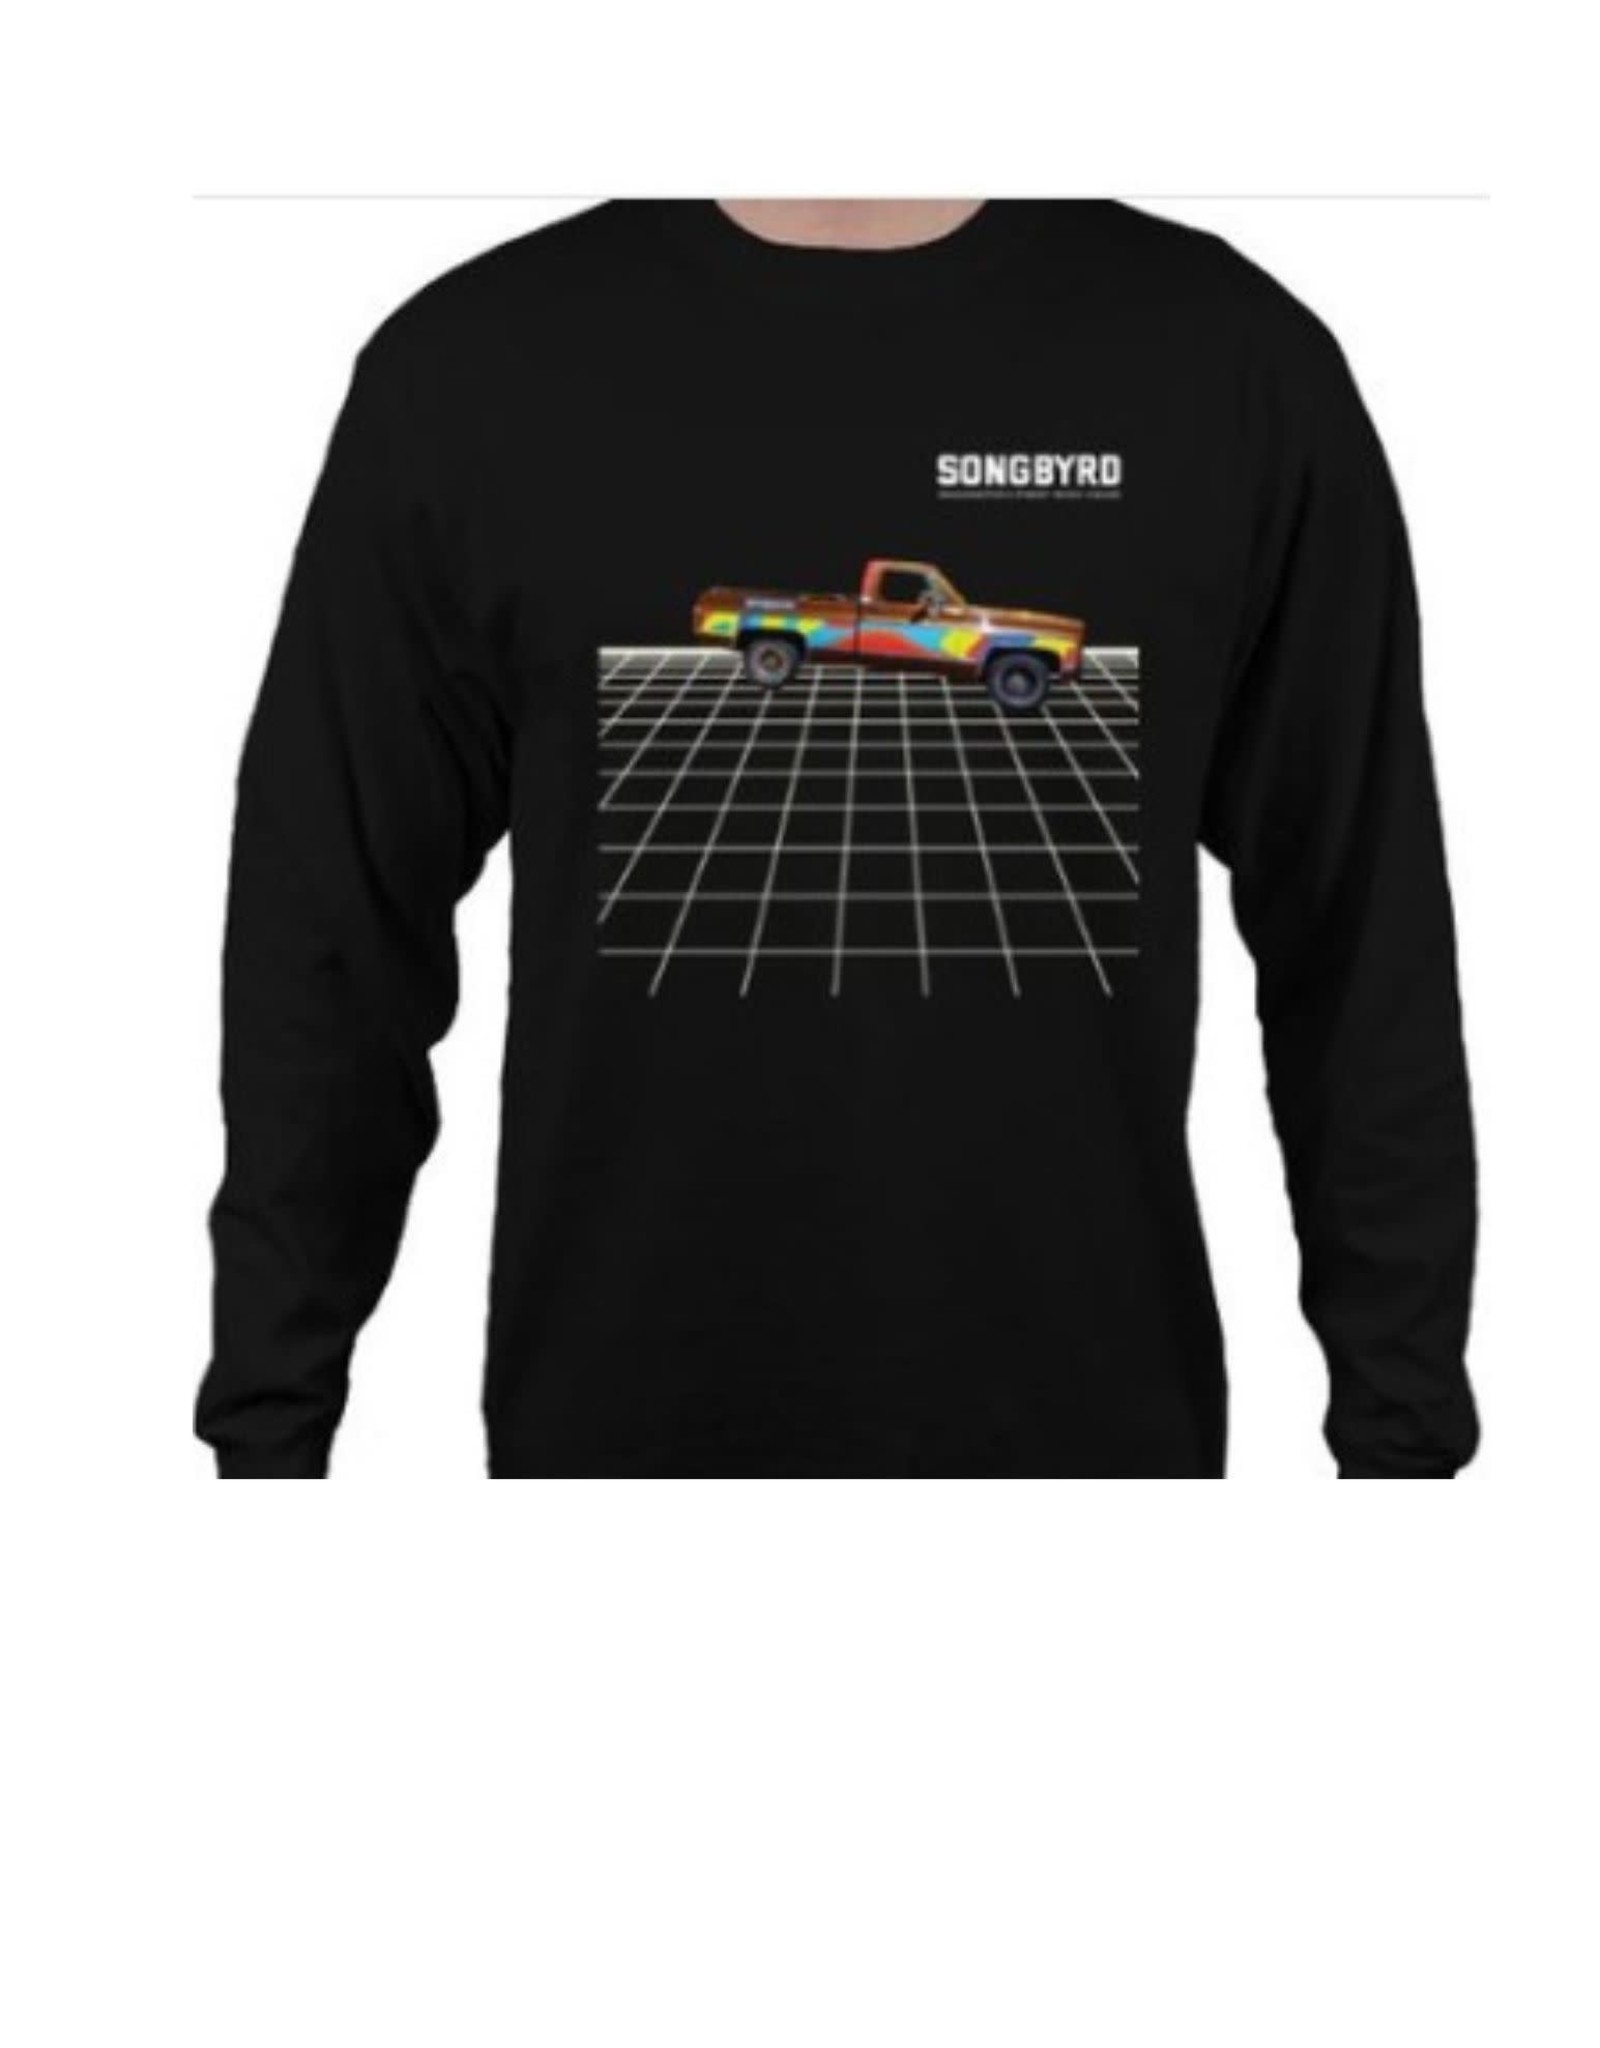 Songbyrd Truck Sweater XL